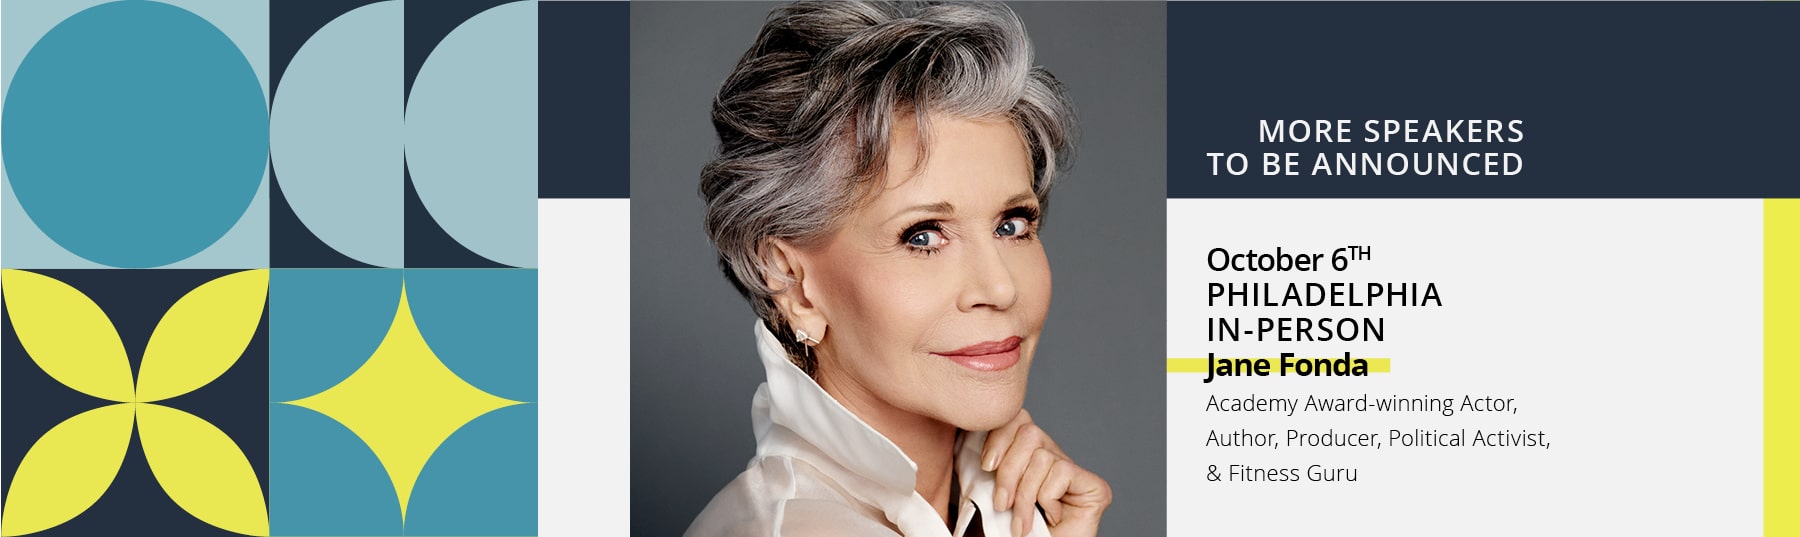 See 2022 speaker Jane Fonda LIVE in Philadelphia October 6